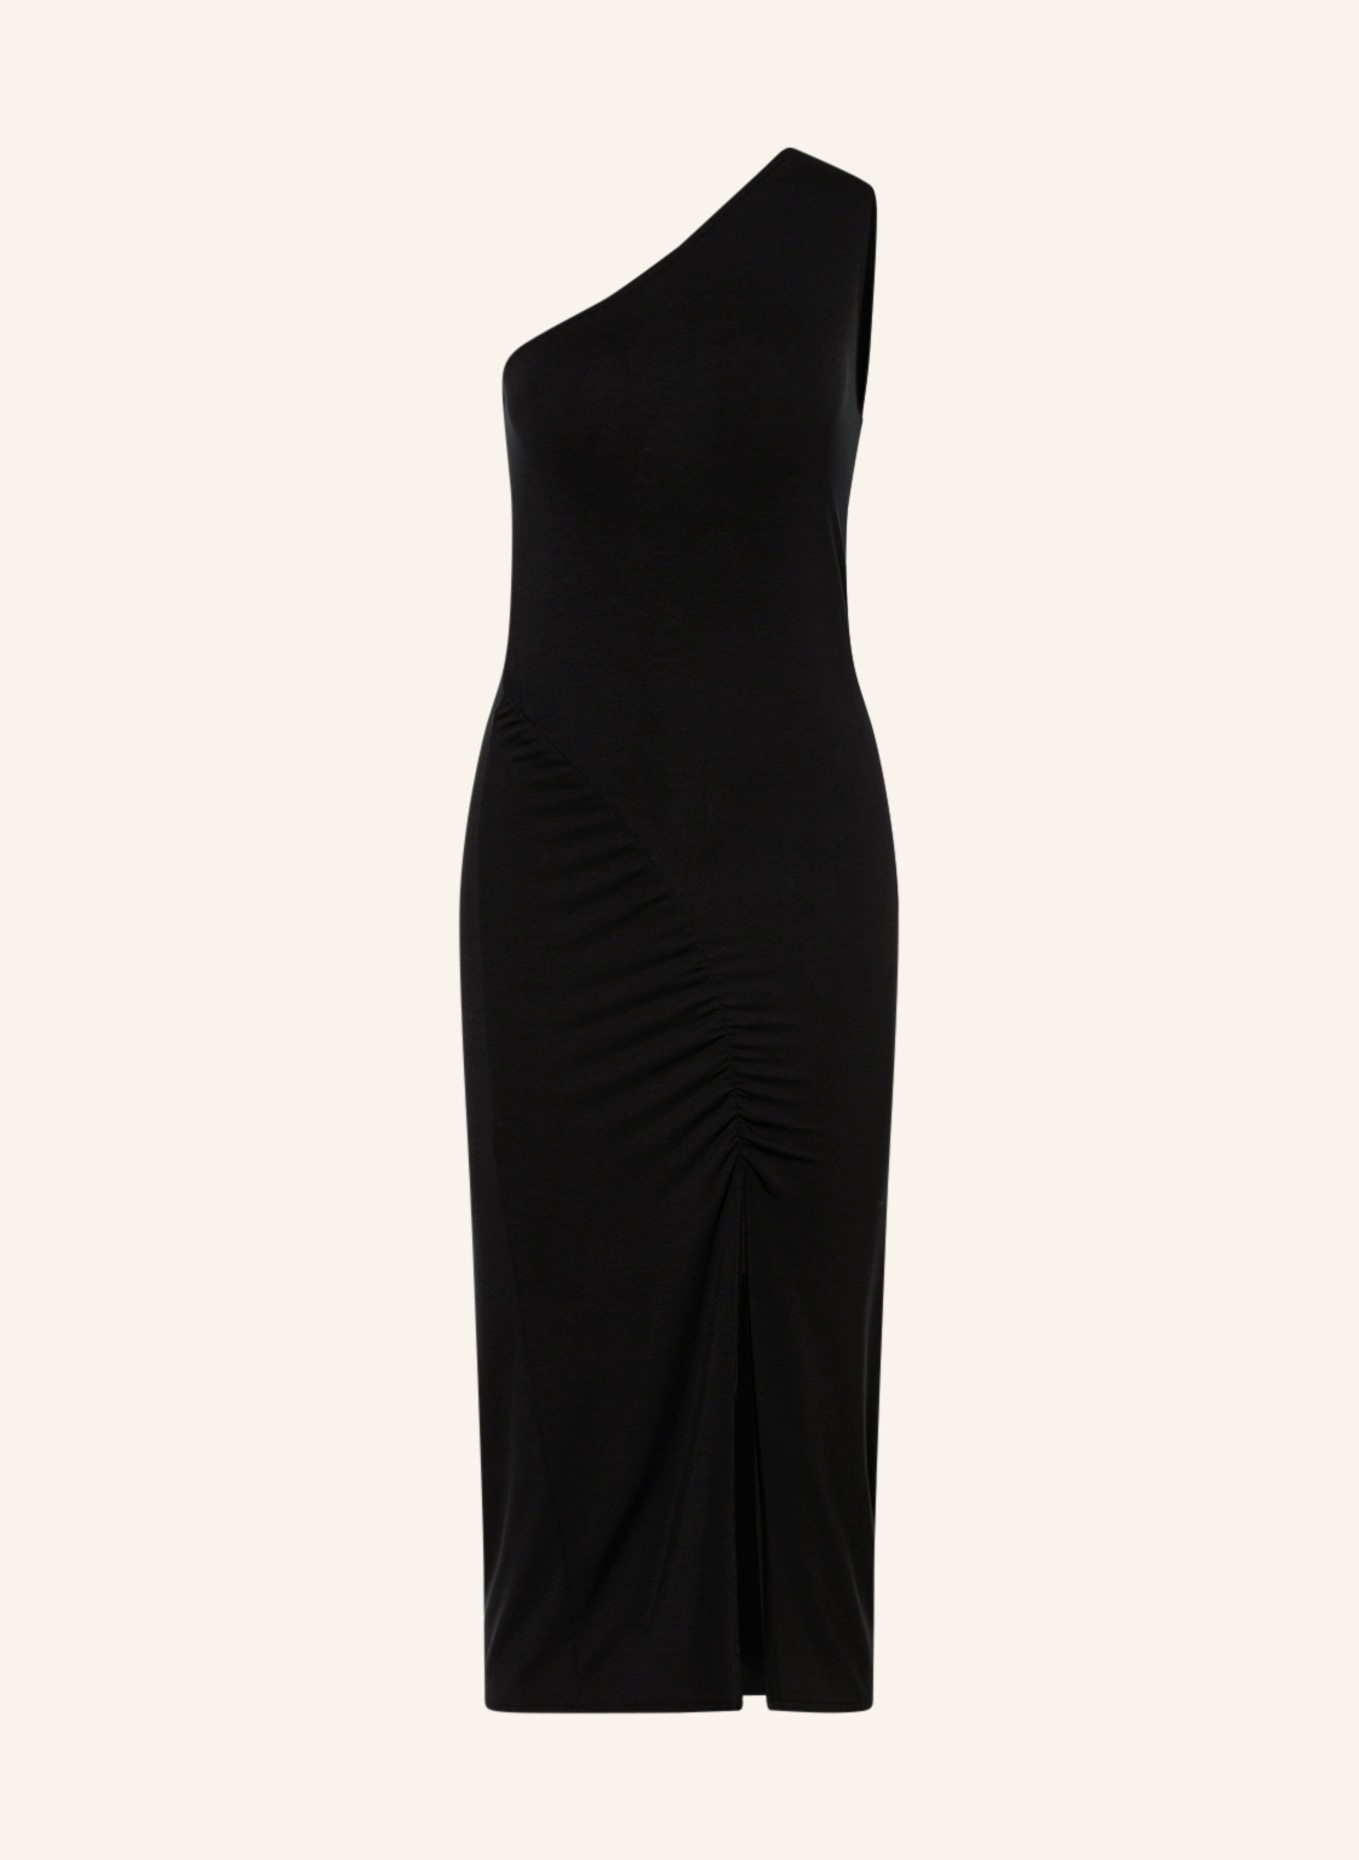 MIRYAM One-shoulder dress, Color: BLACK (Image 1)